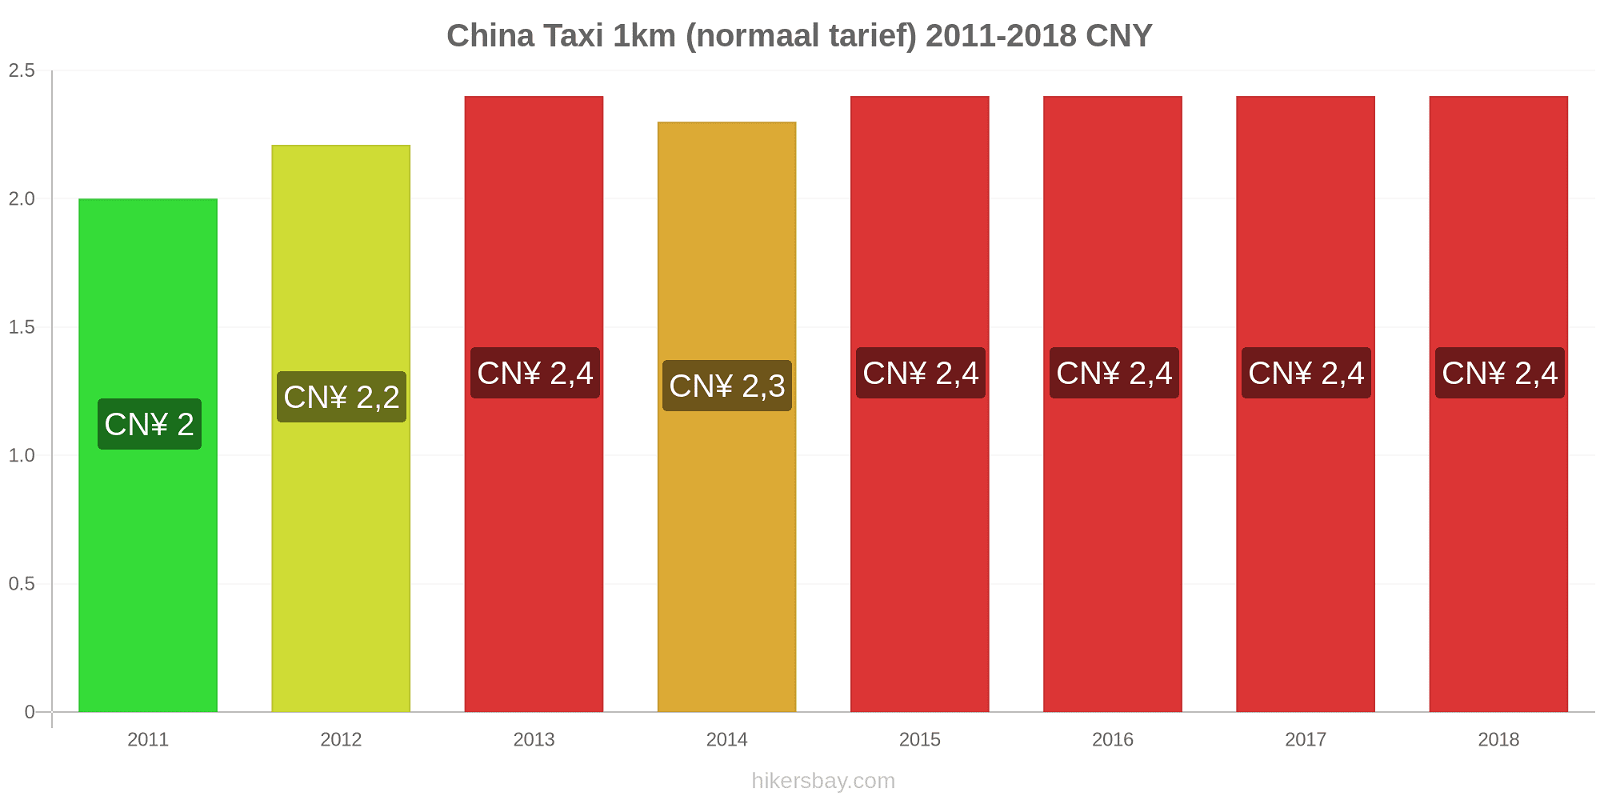 China prijswijzigingen Taxi 1km (normaal tarief) hikersbay.com